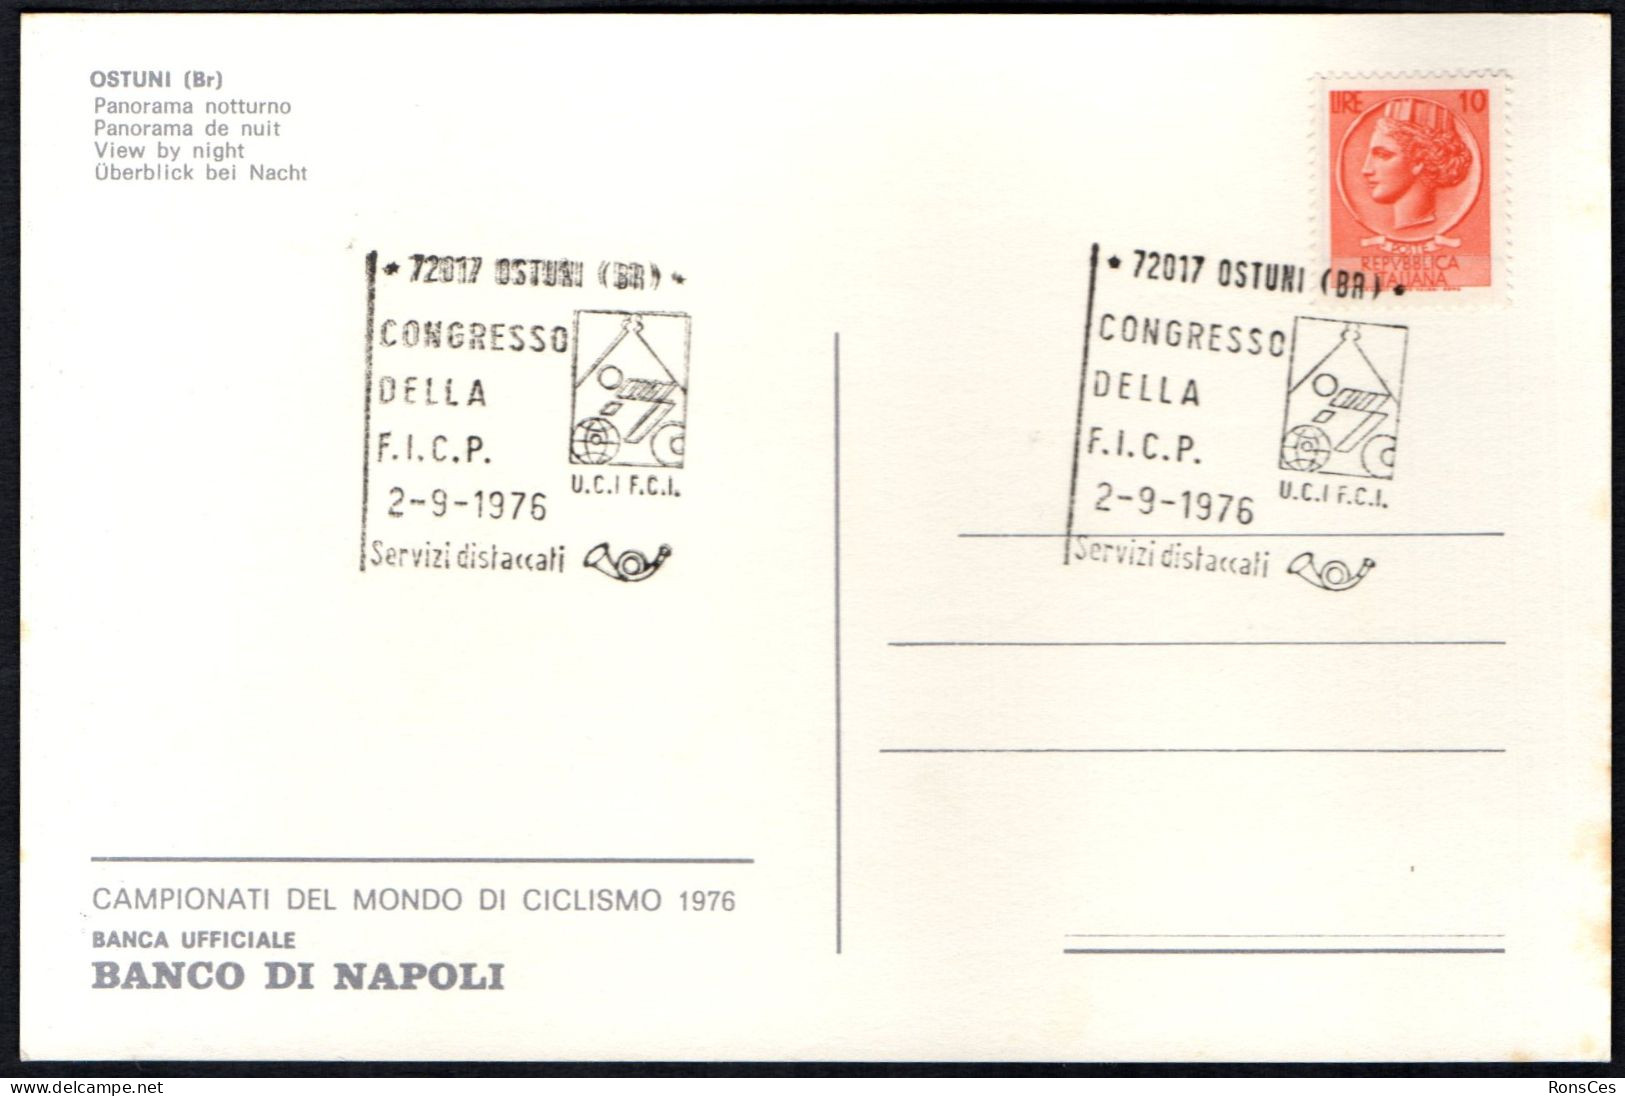 CYCLING - ITALIA OSTUNI (BR) 1976 - CONGRESSO DELLA F.I.C.P. - CARTOLINA UFFICIALE - A - Radsport